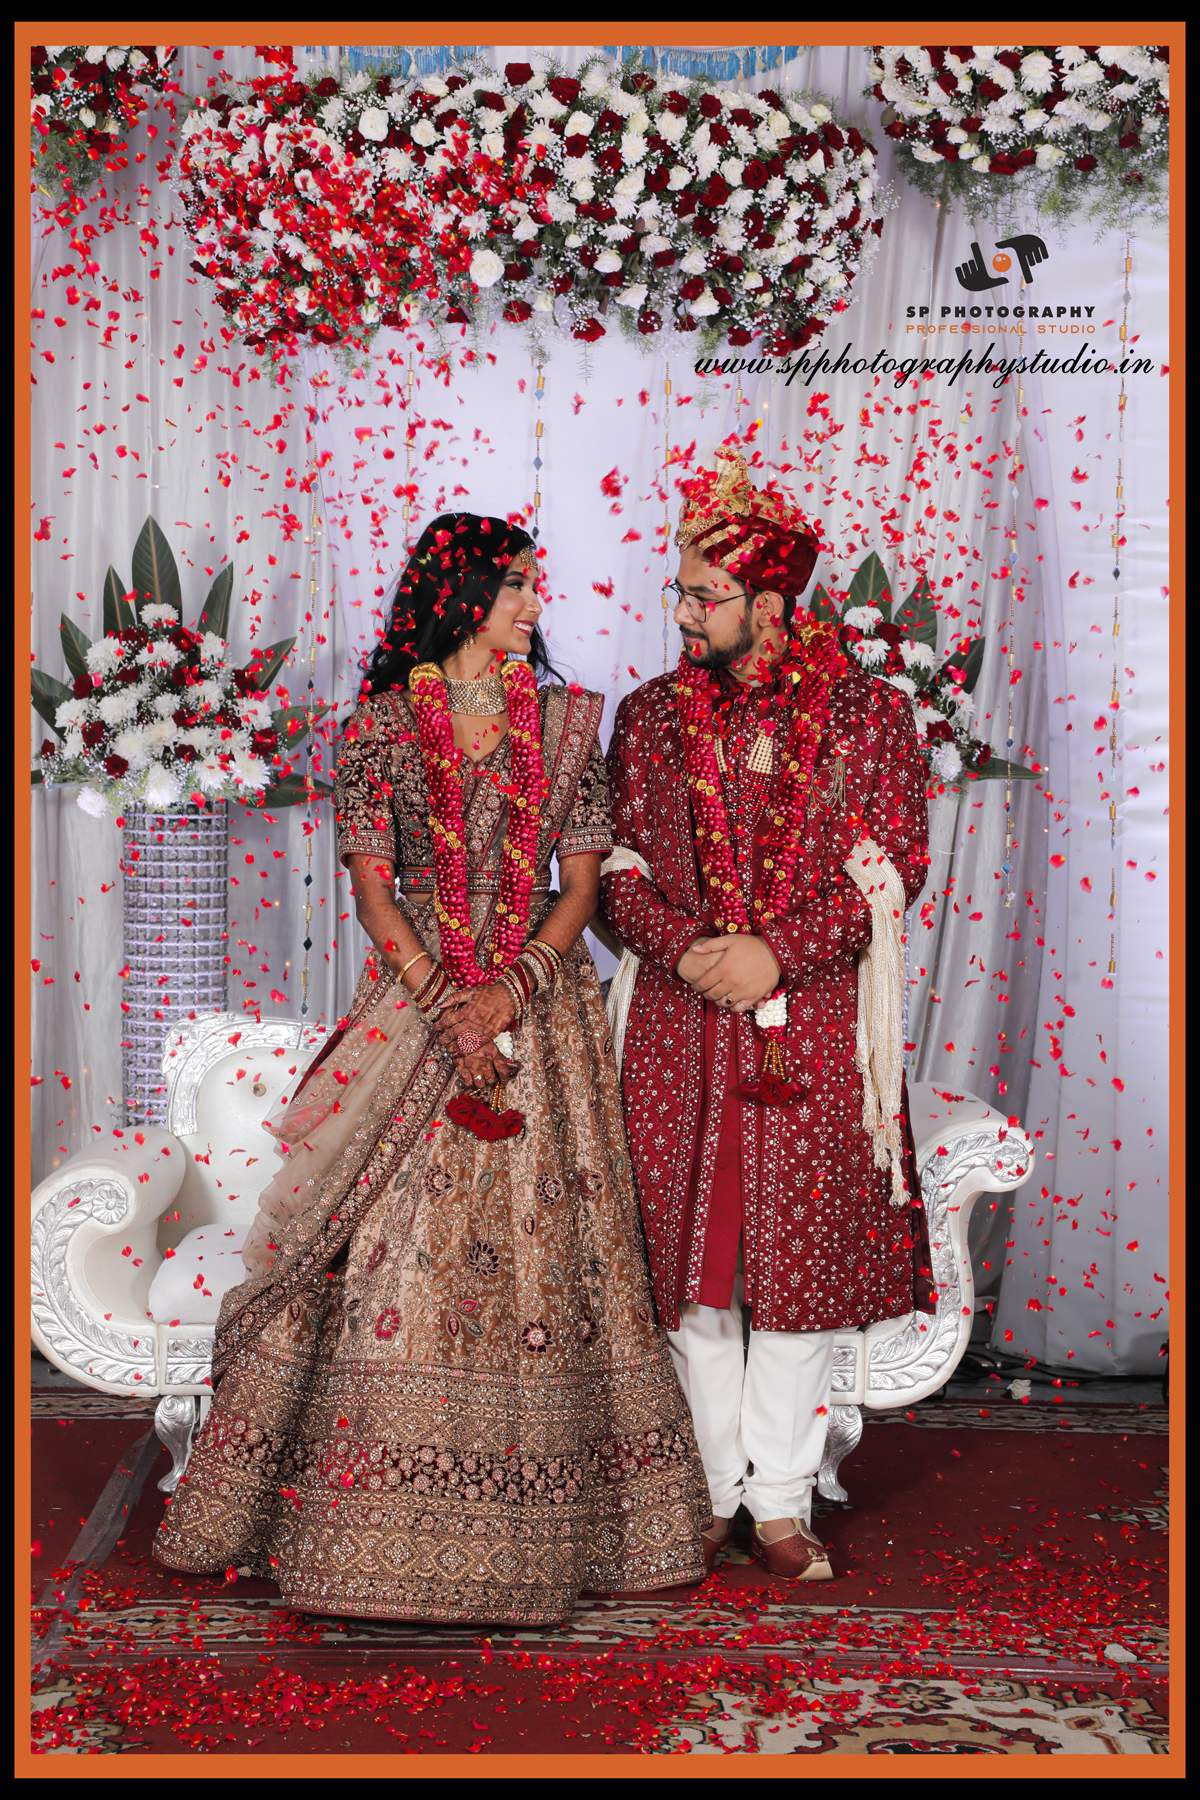 SP Photography-Wedding Reception Photography-Bangalore